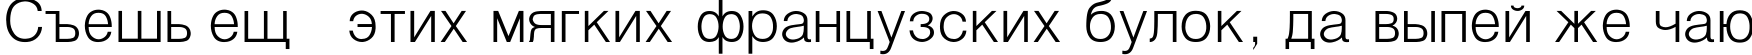 Пример написания шрифтом Helvetica_Light-Normal текста на русском